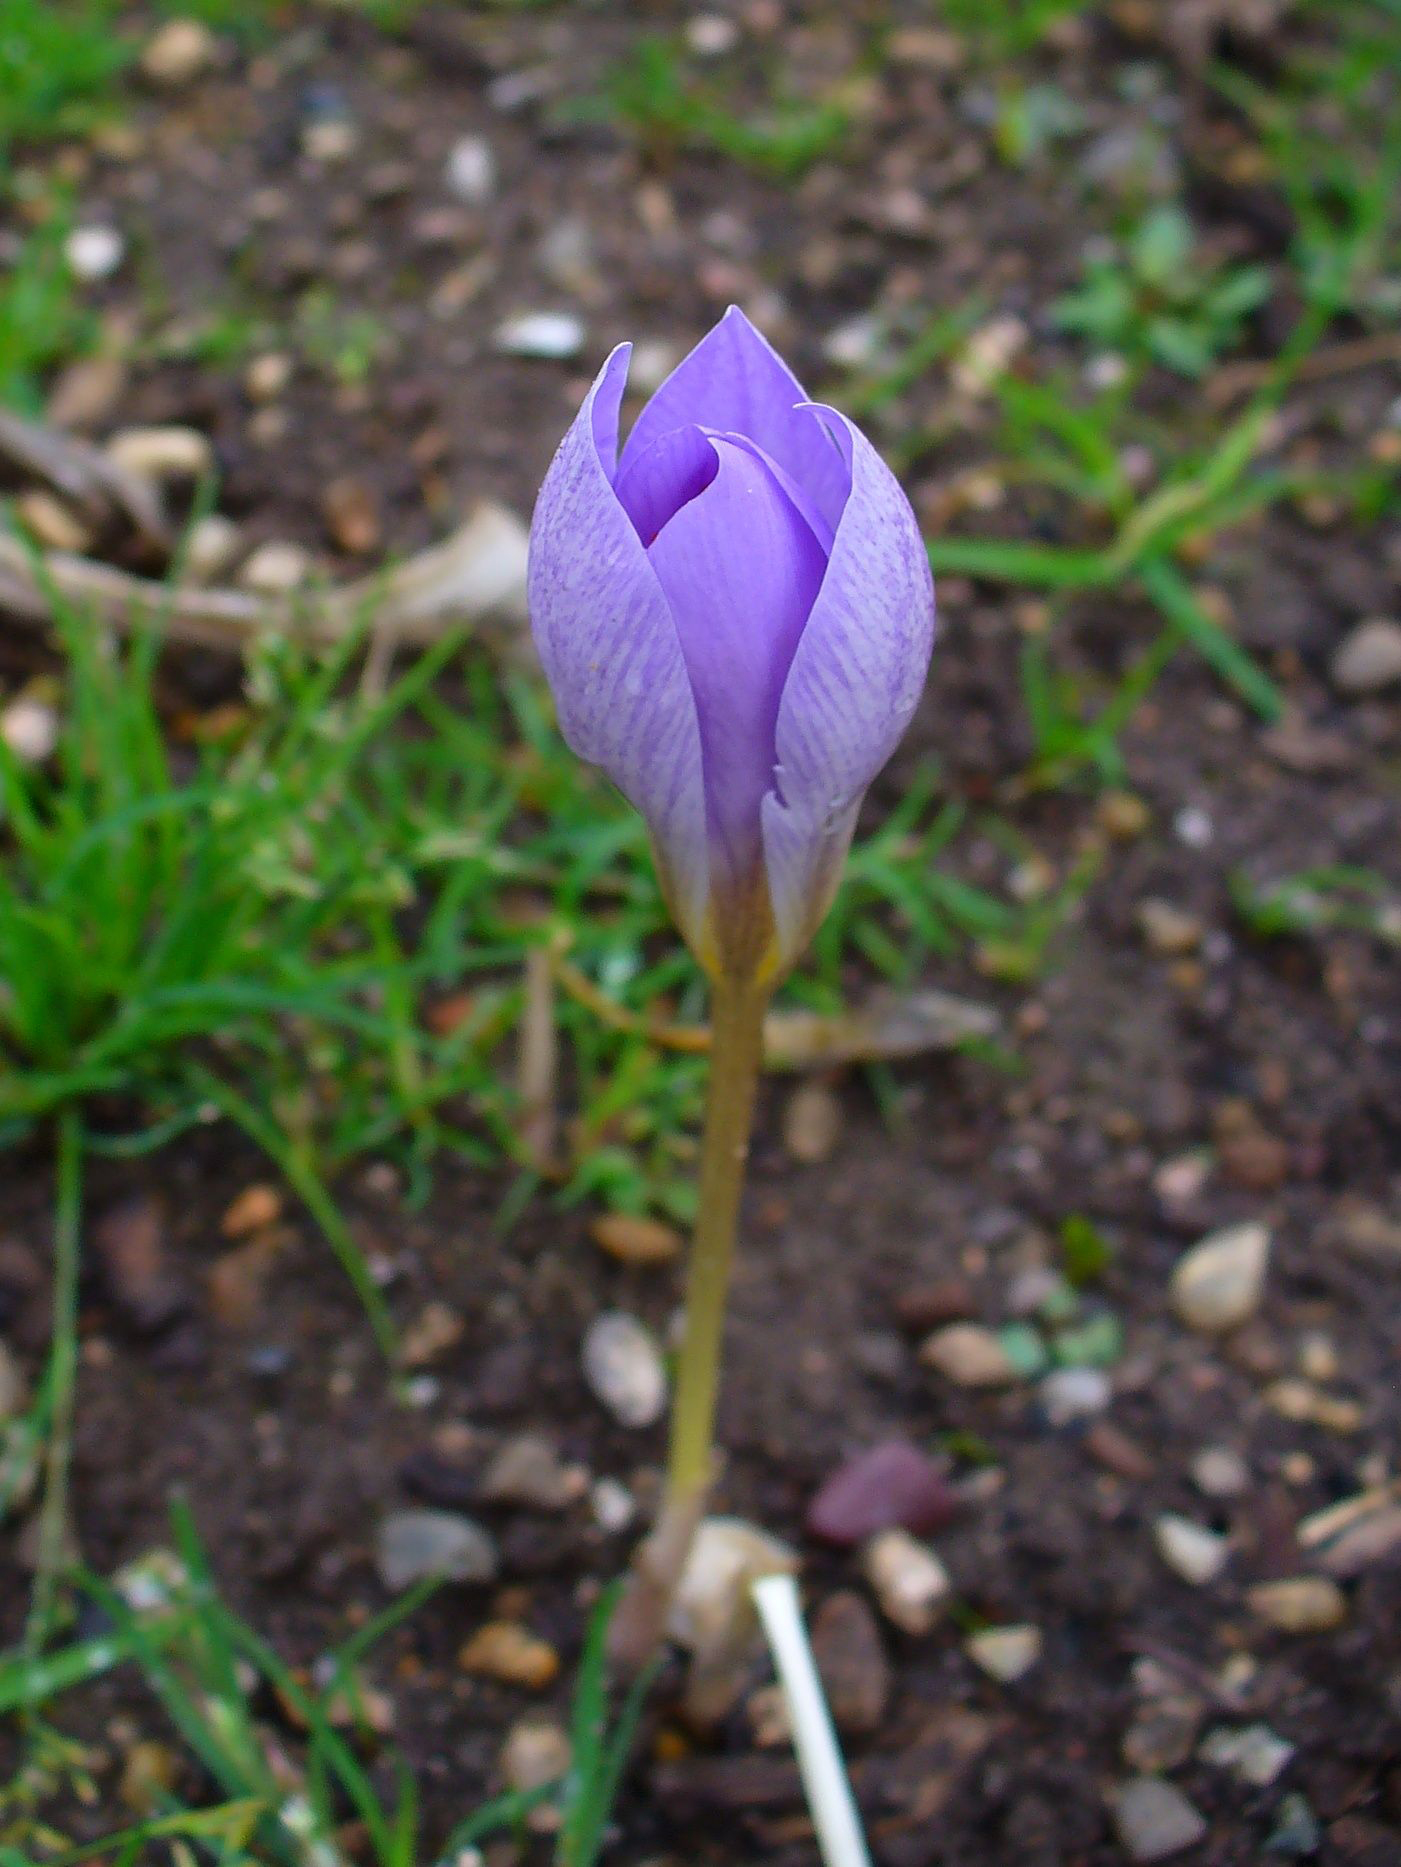 Flower-bud-of-Saffron